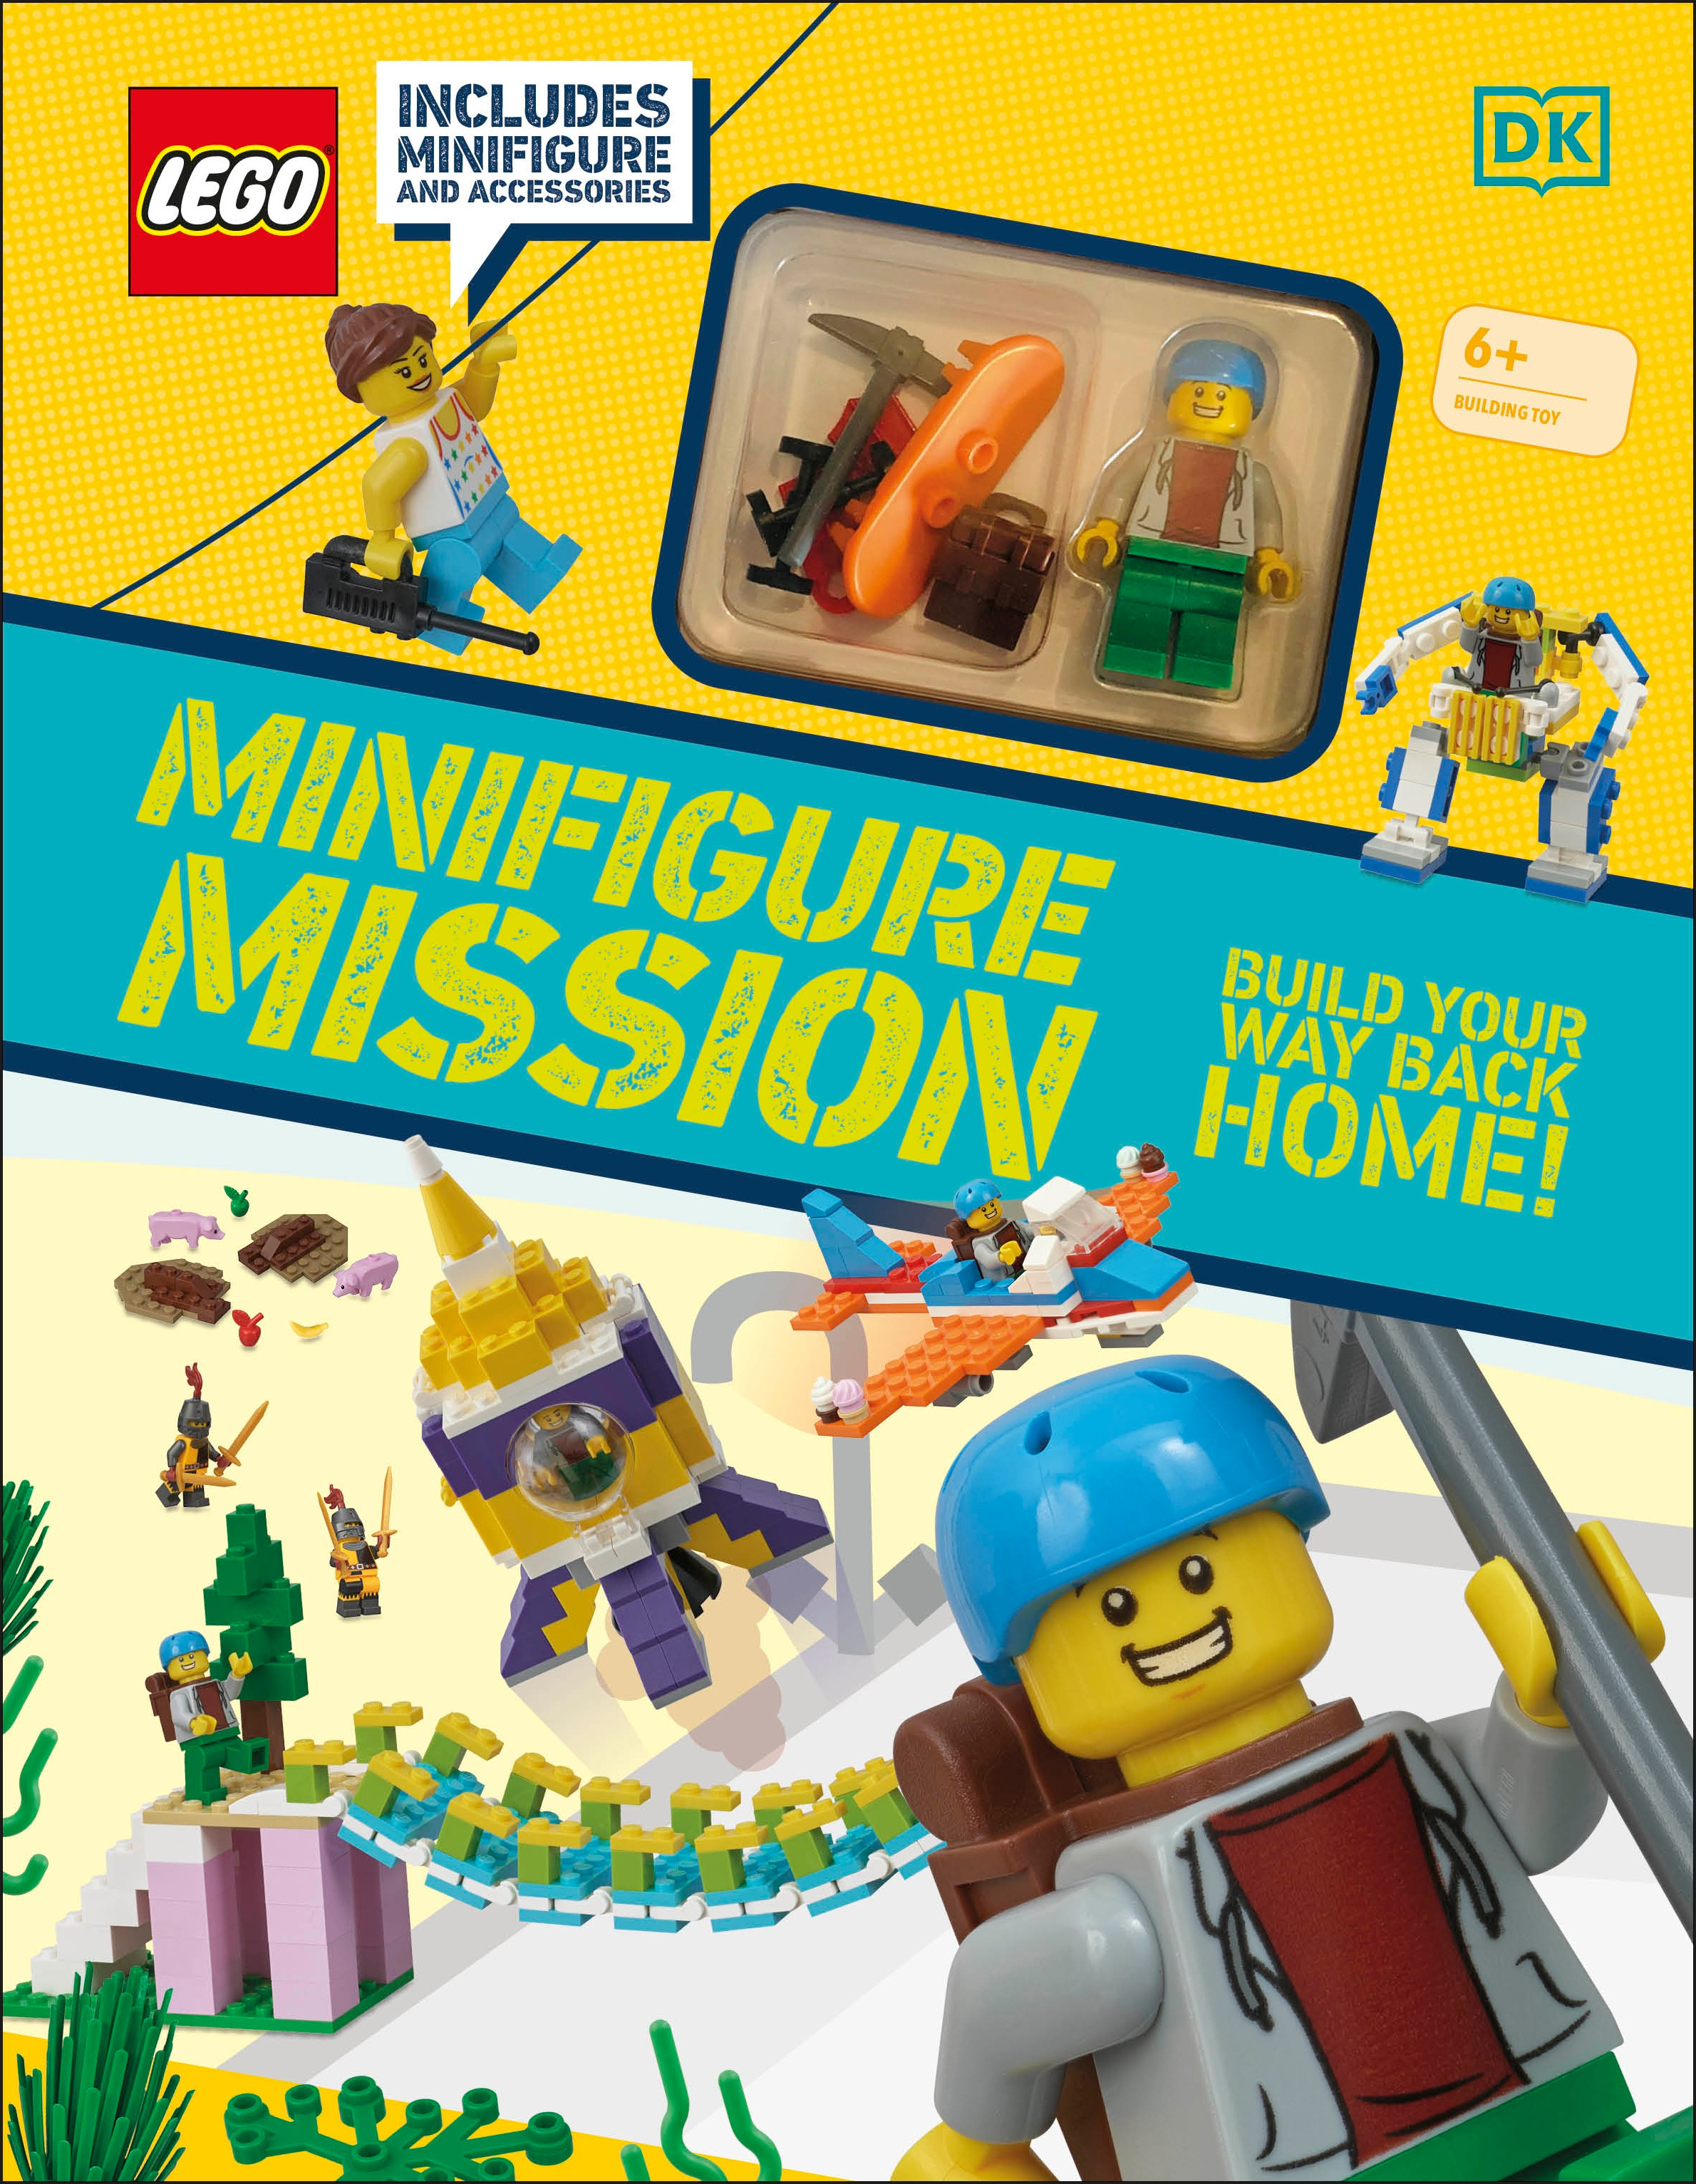 LEGO Minifigure Mission : includes LEGO minifigure and accessories | Kosara, Tori